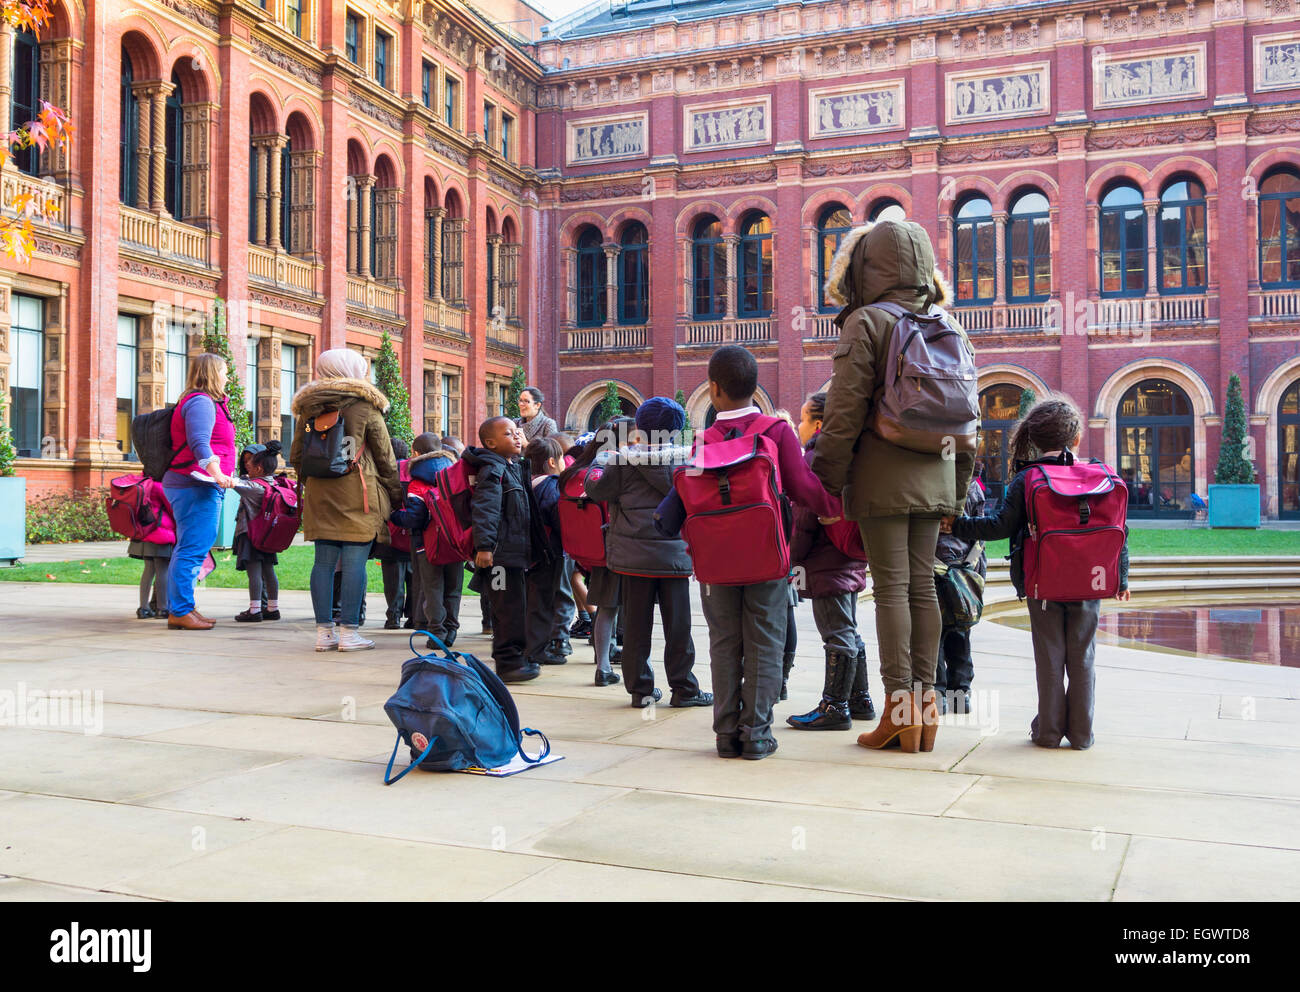 Les enfants de l'école primaire sur un voyage scolaire au Victoria and Albert Museum, London, England, UK Banque D'Images